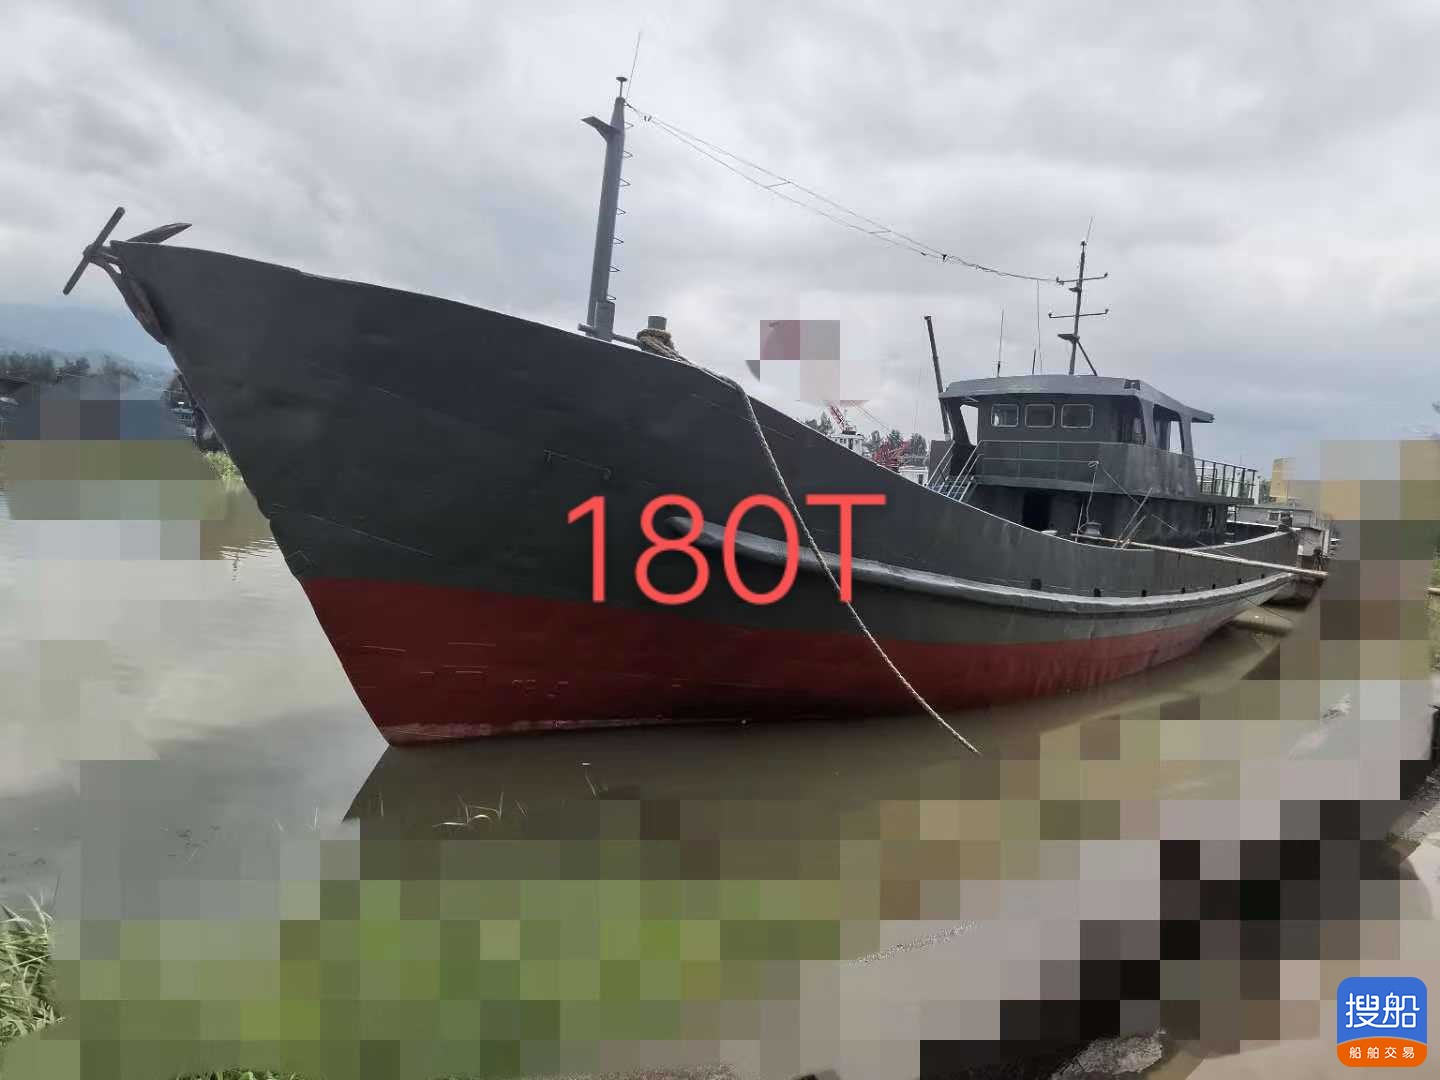 出售:沿海渔船型水船